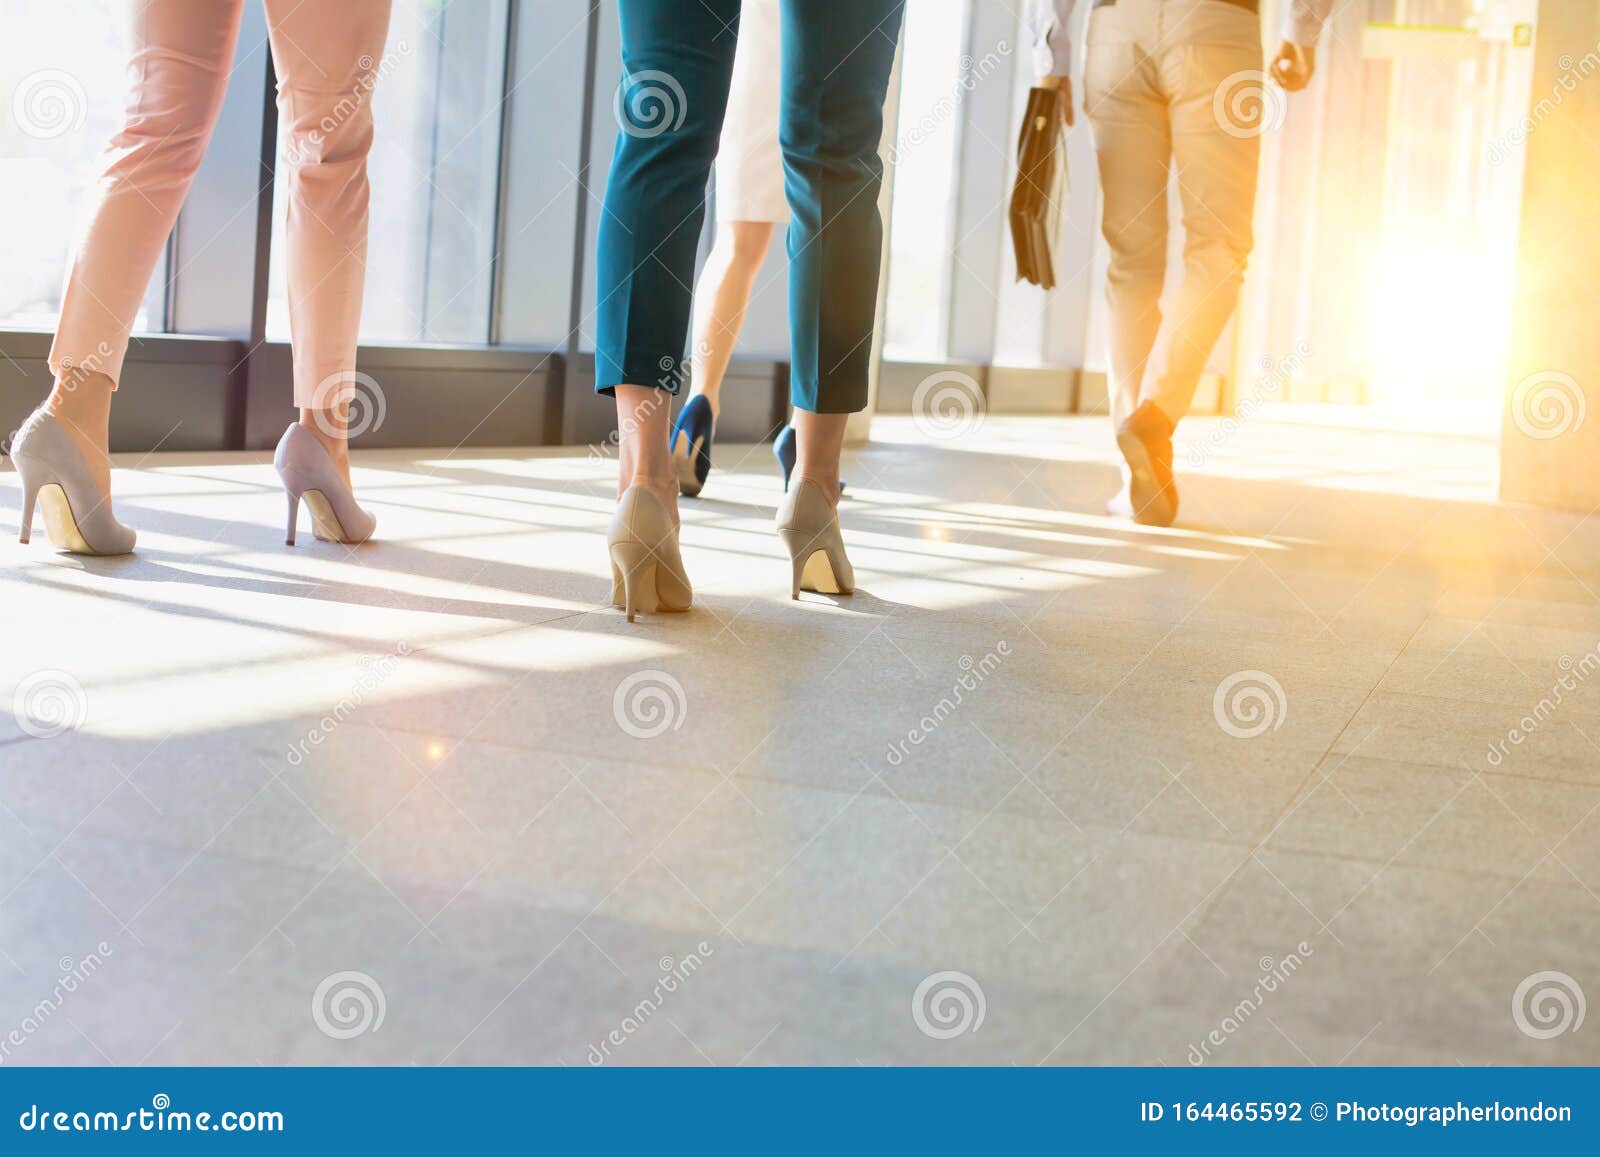 busines people walking in office hall